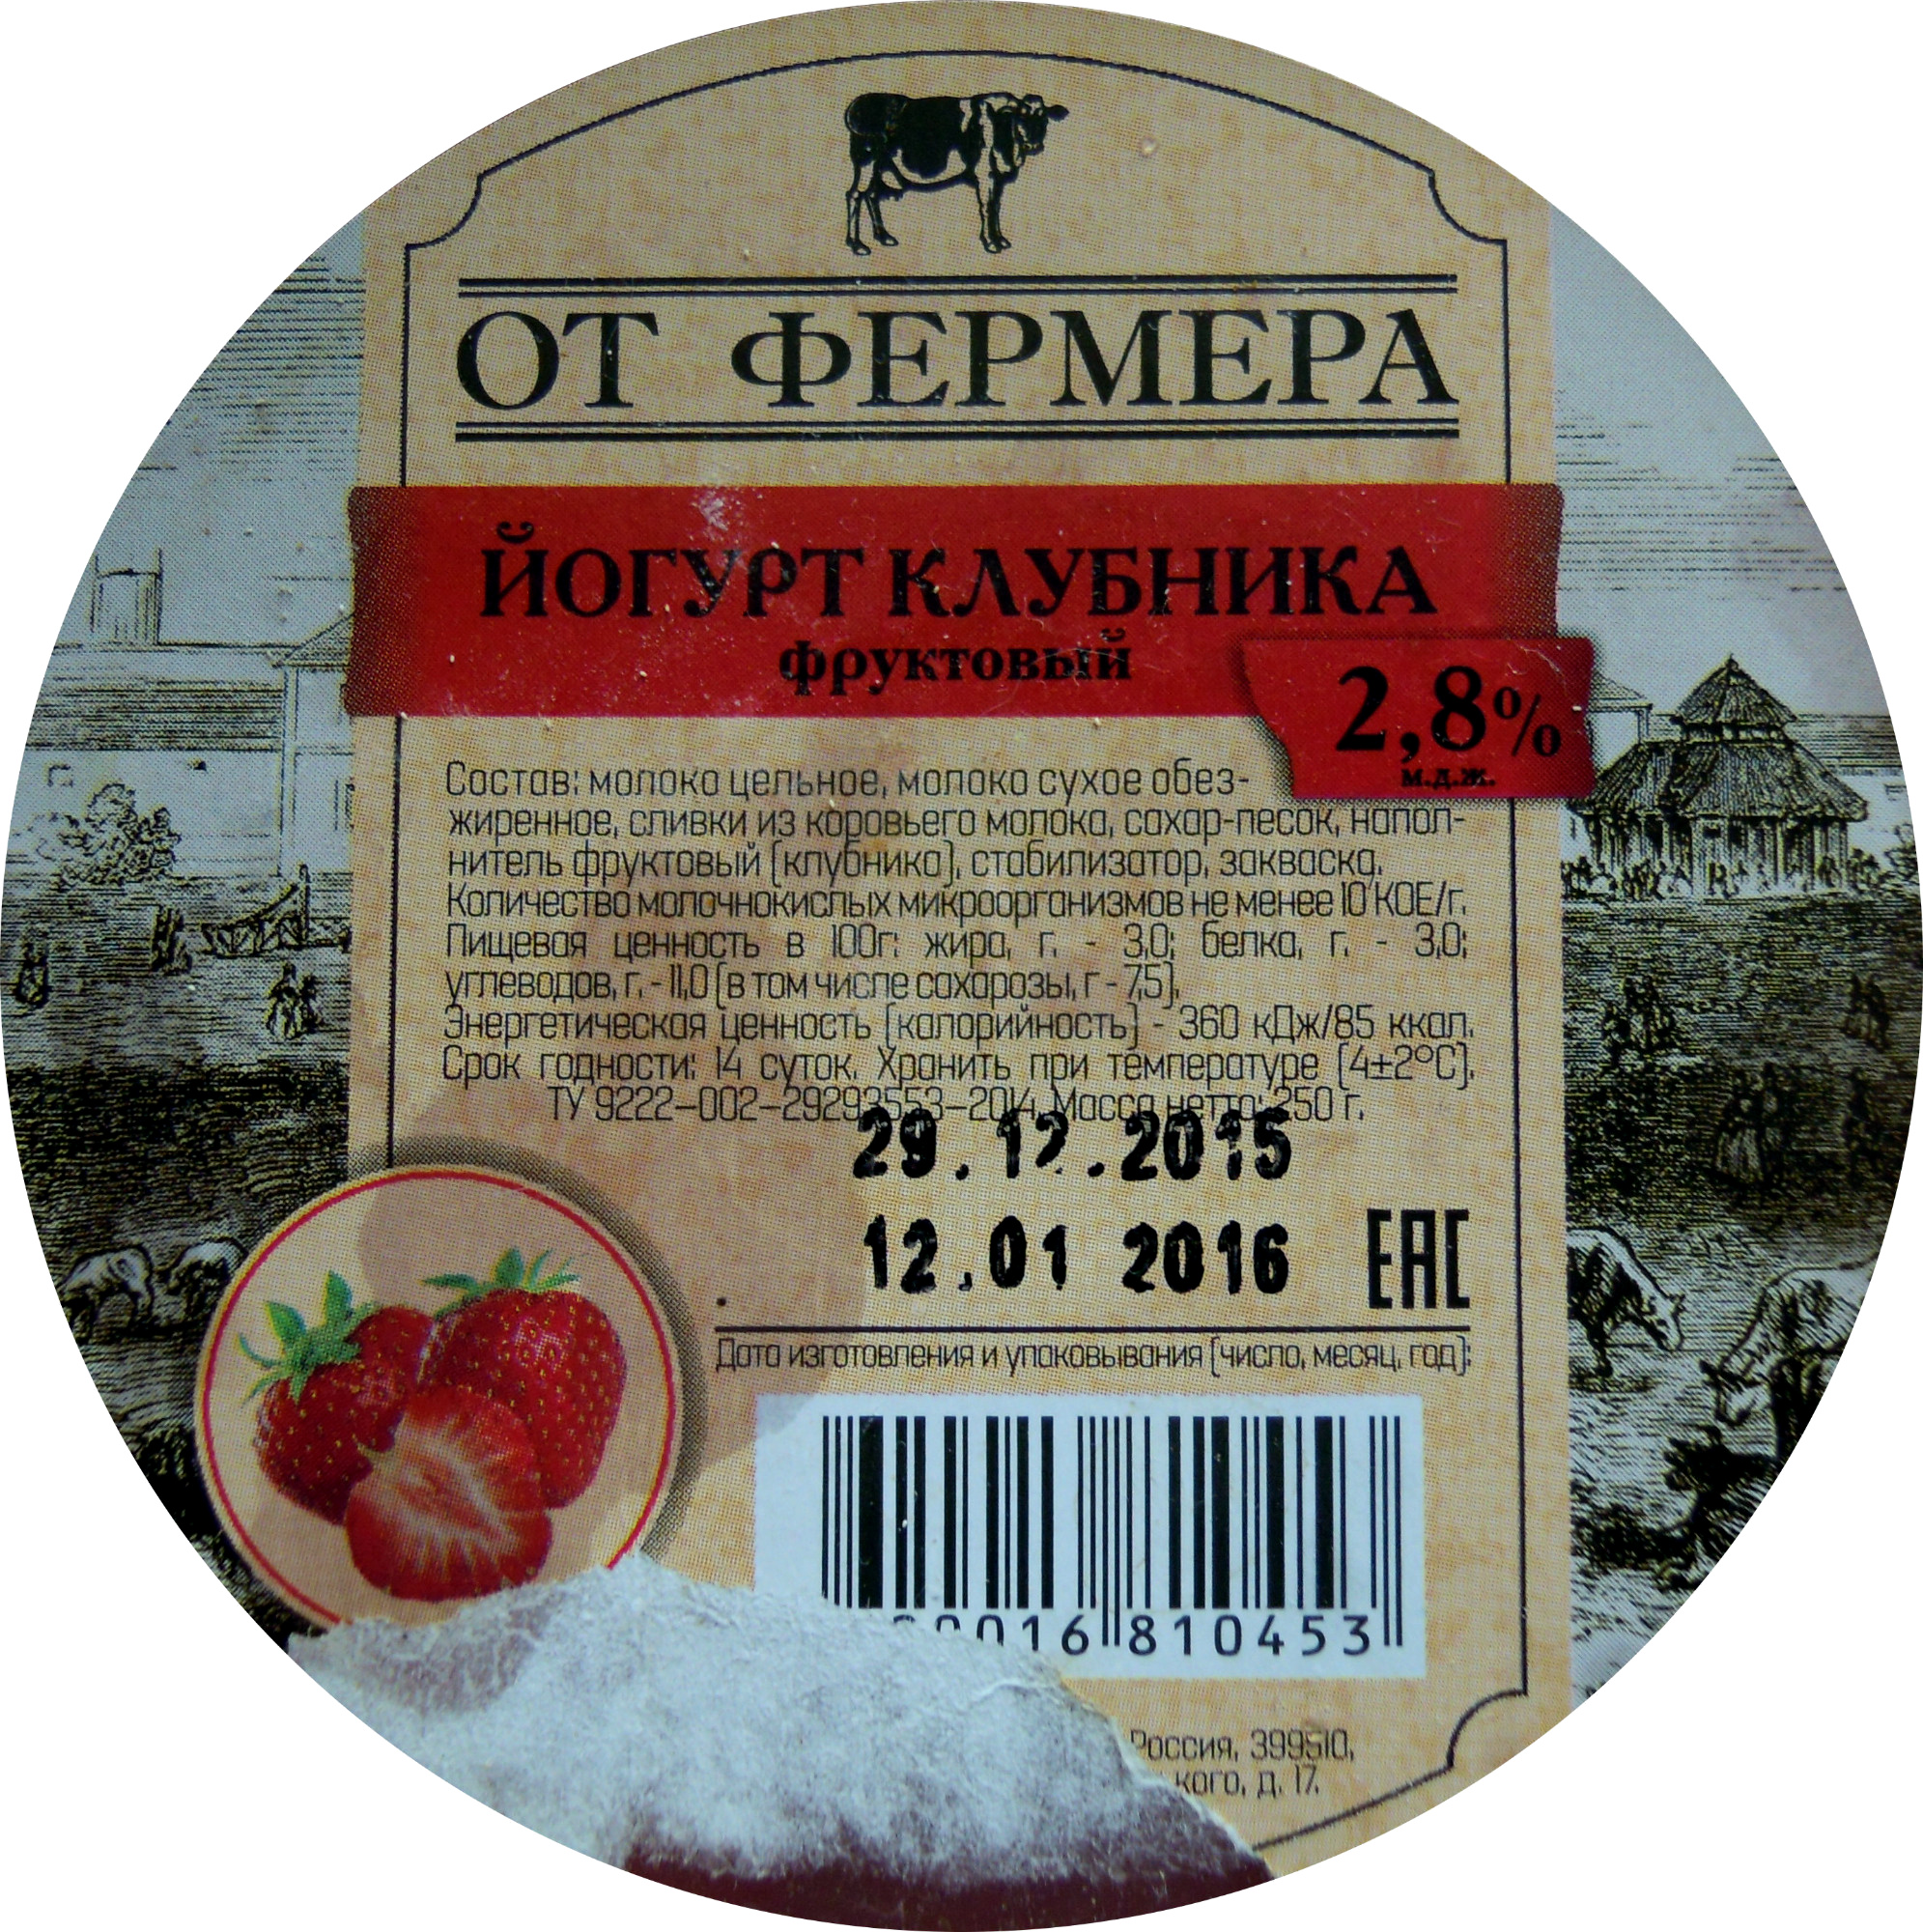 Йогурт клубника фруктовый 2,8 % - Product - ru